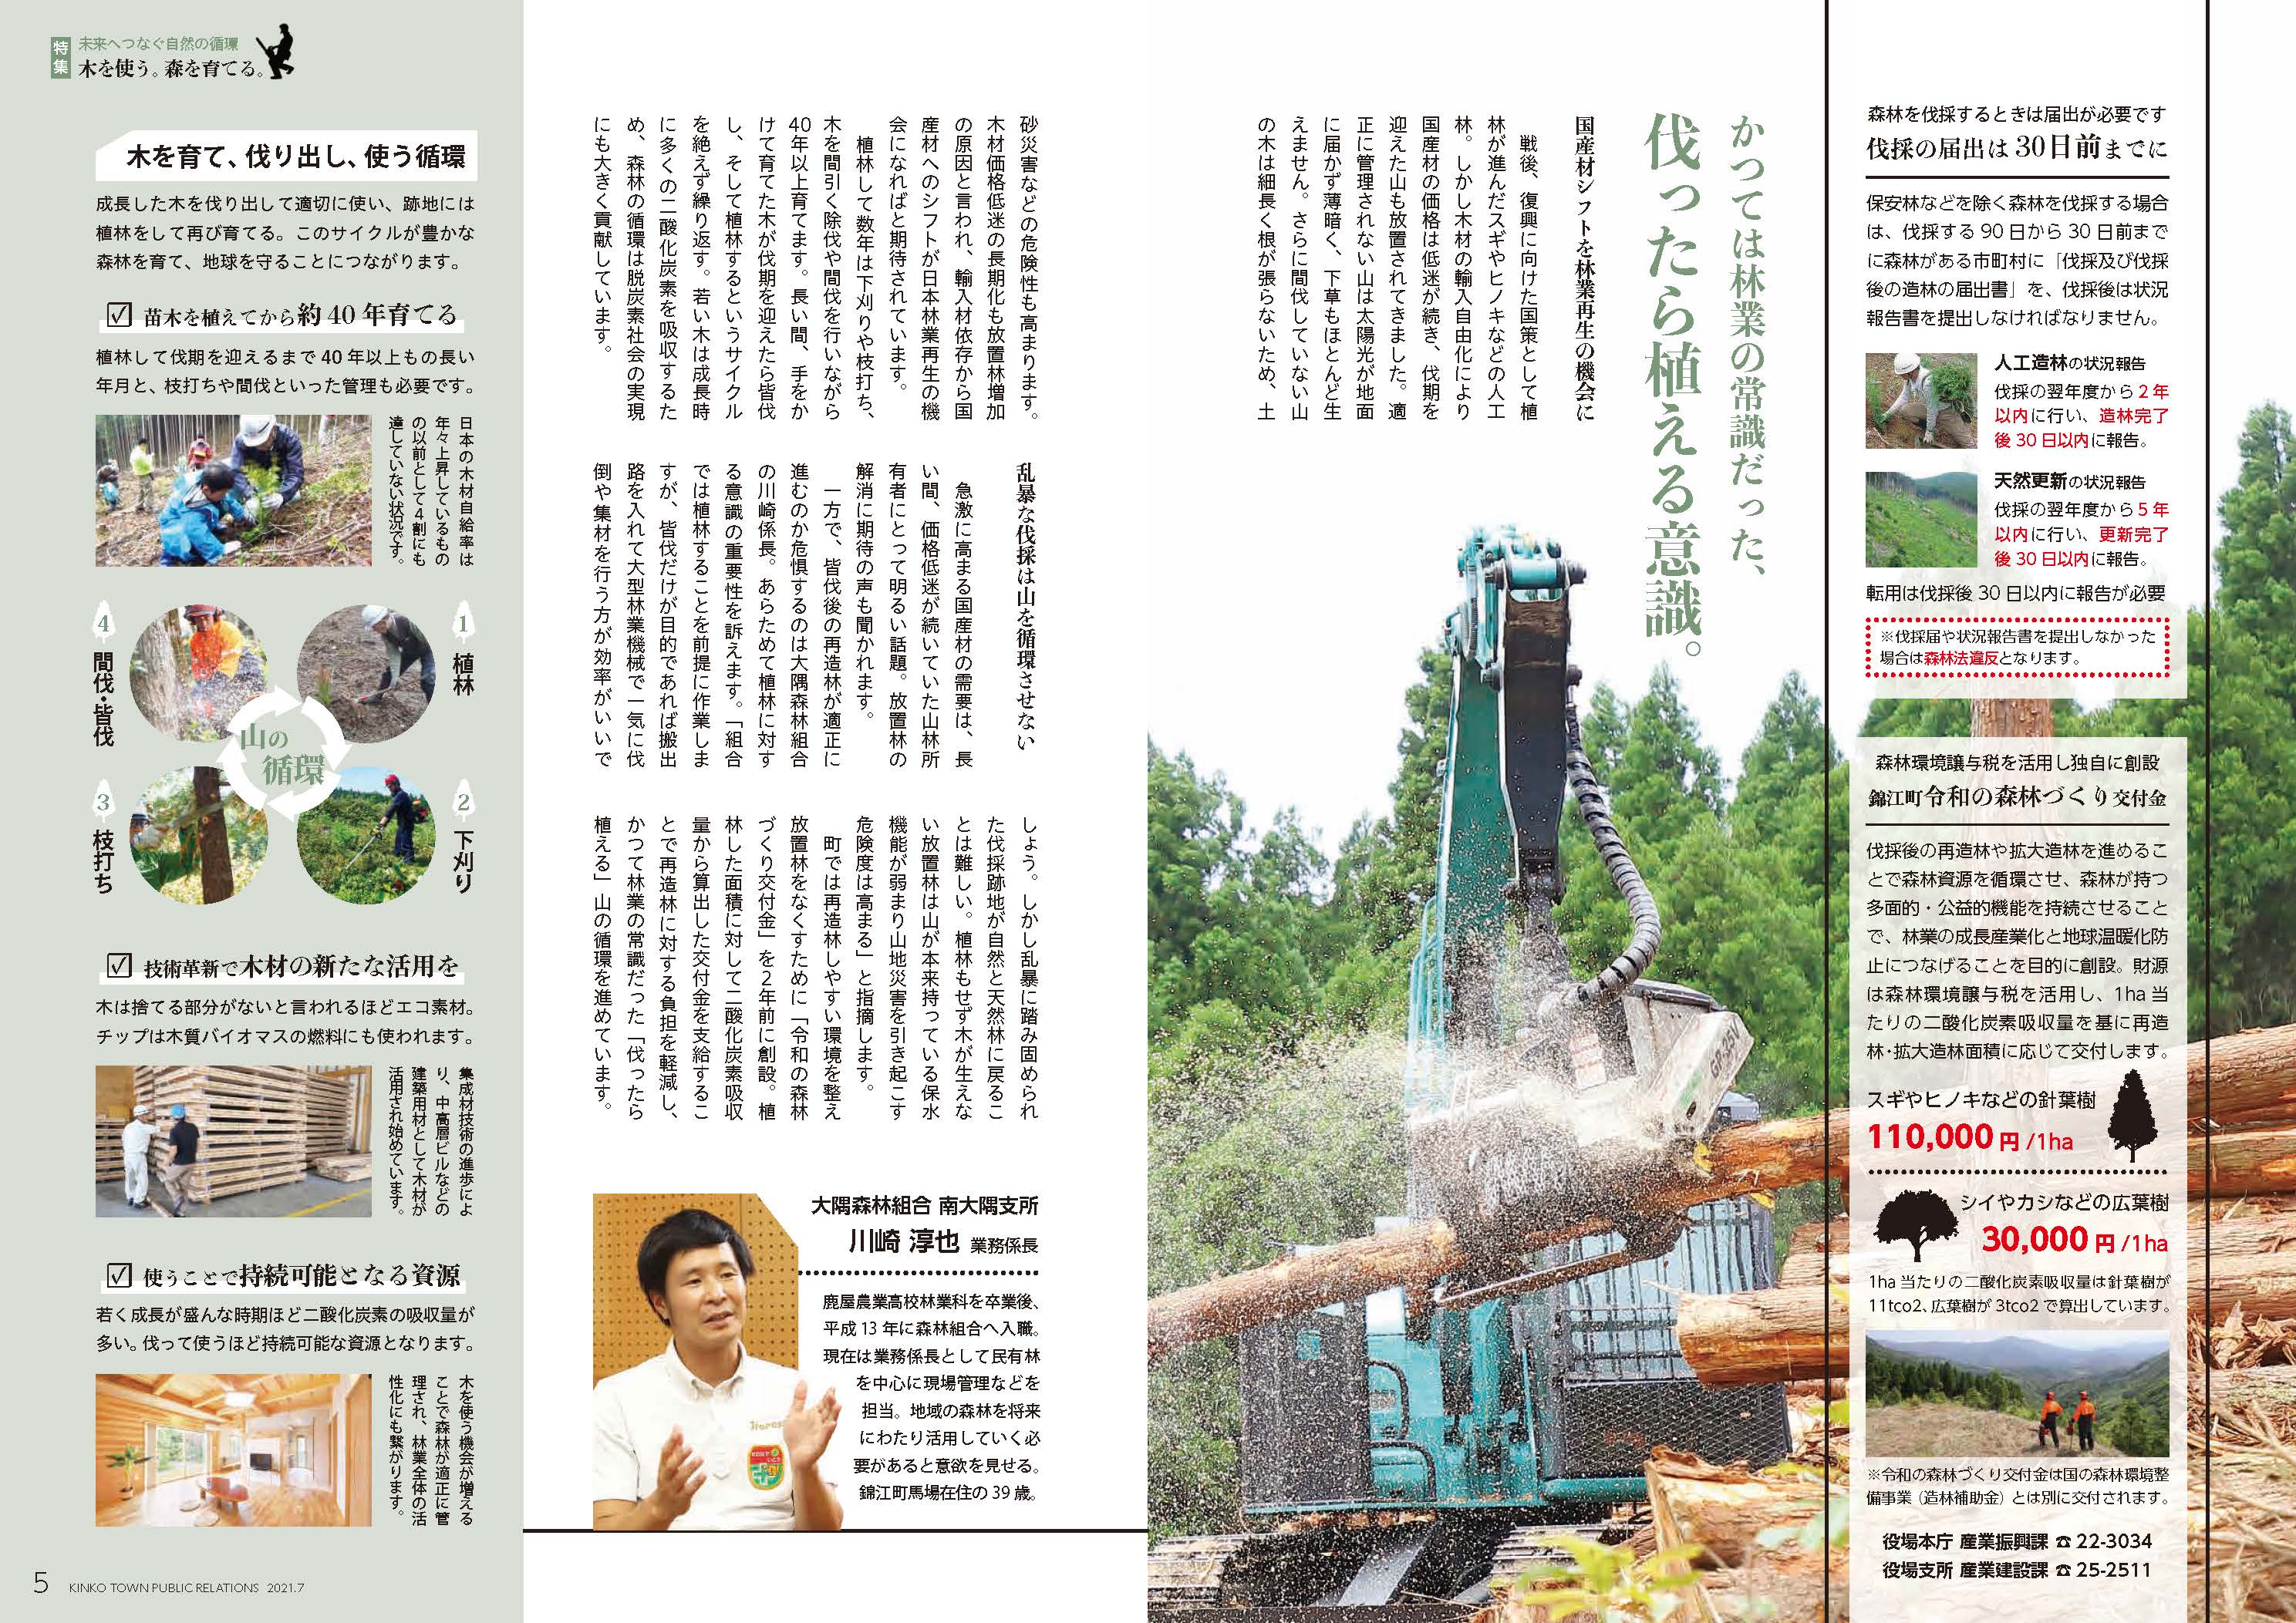 森林環境譲与税を活用した自治体の取組の紹介 Vol.7 鹿児島県錦江町